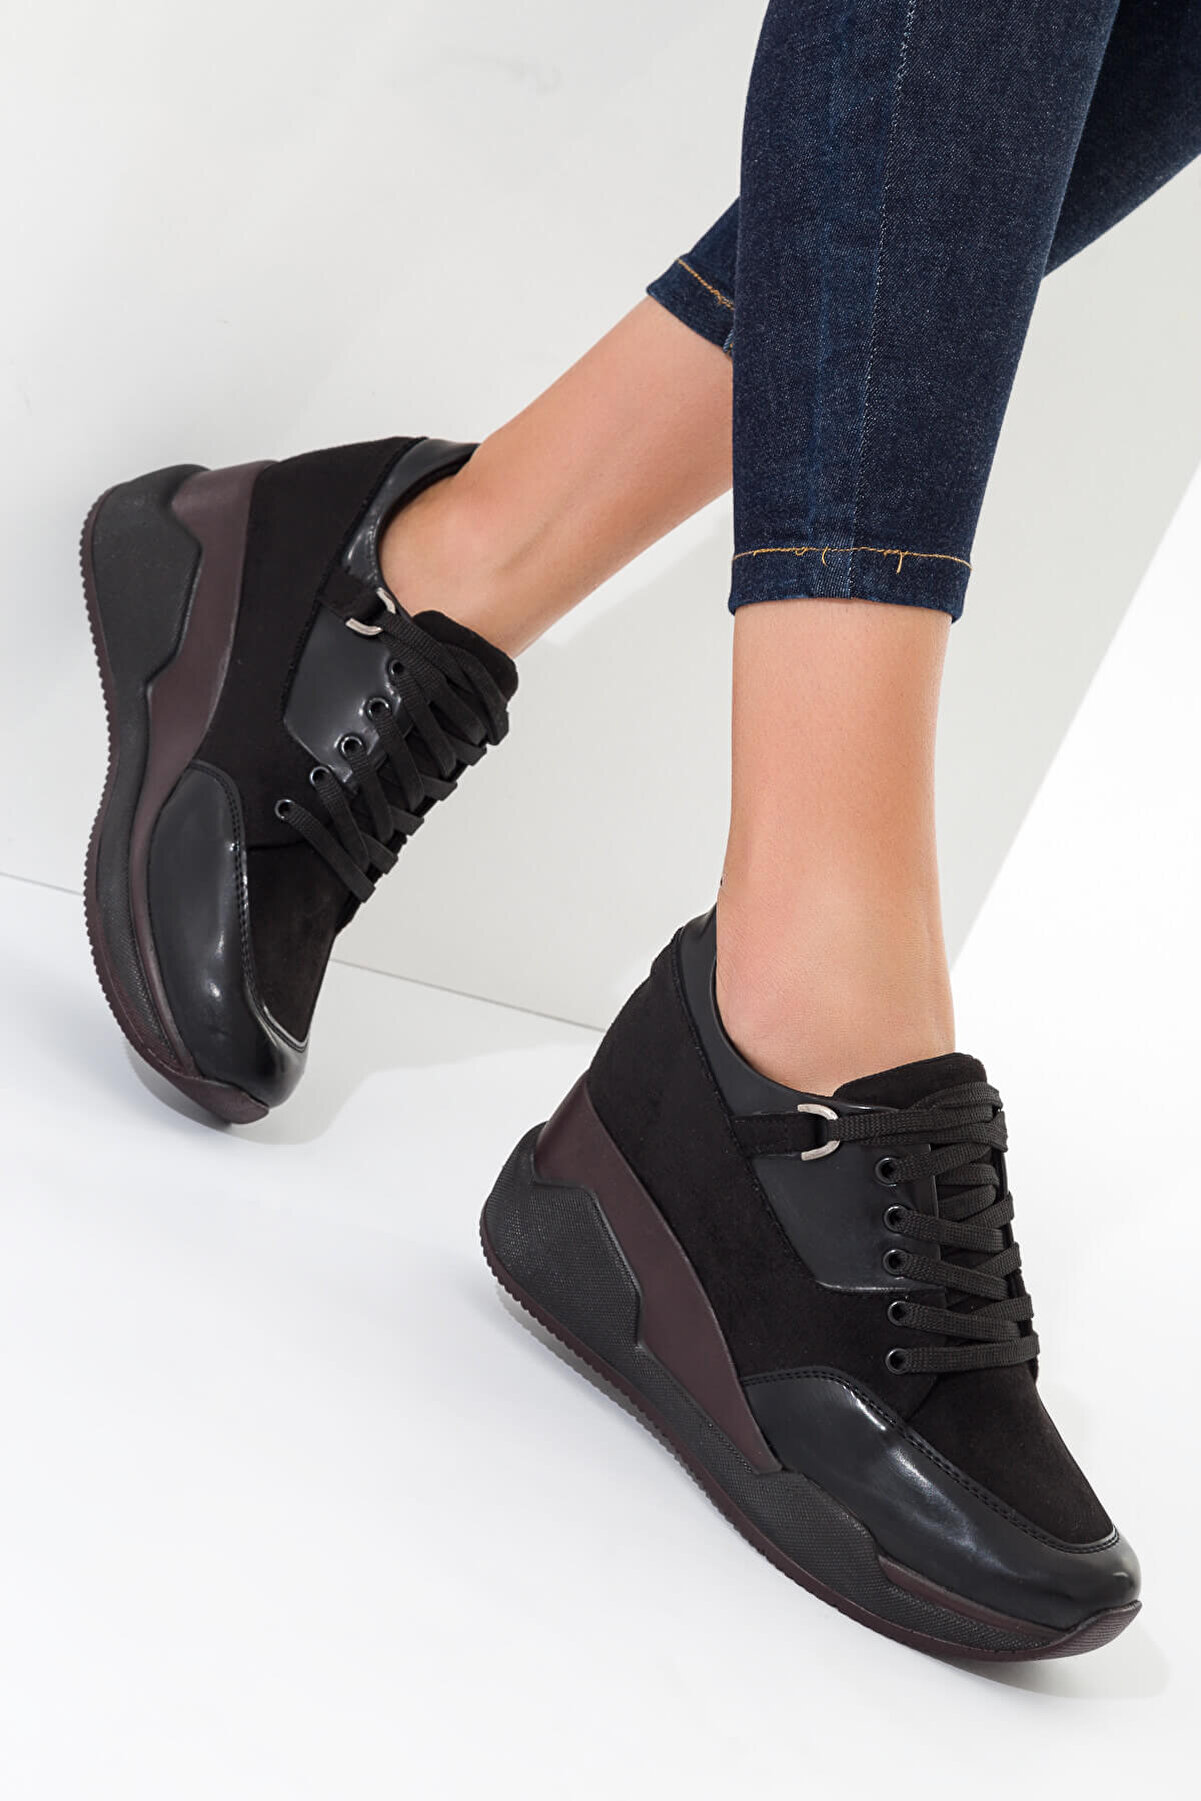 SOHO Siyah Rugan Süet Kadın Dolgu Topuklu Ayakkabı 9540